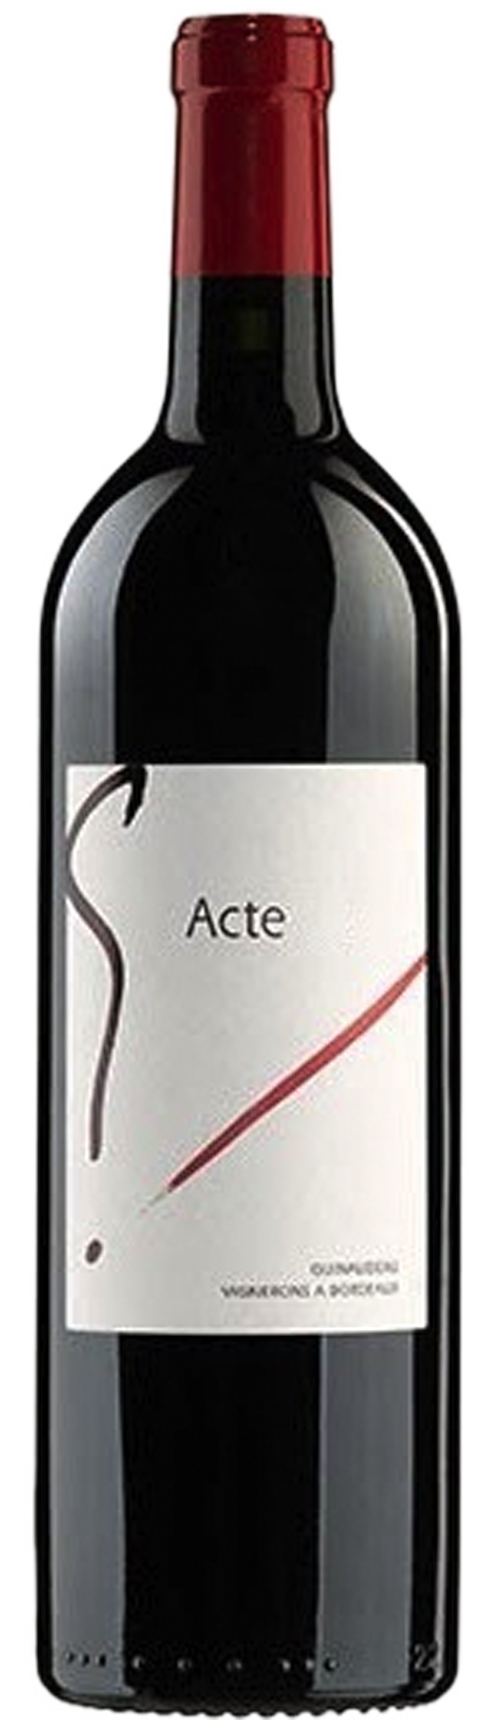 Image of product G'Acte 6, Bordeaux Superieur